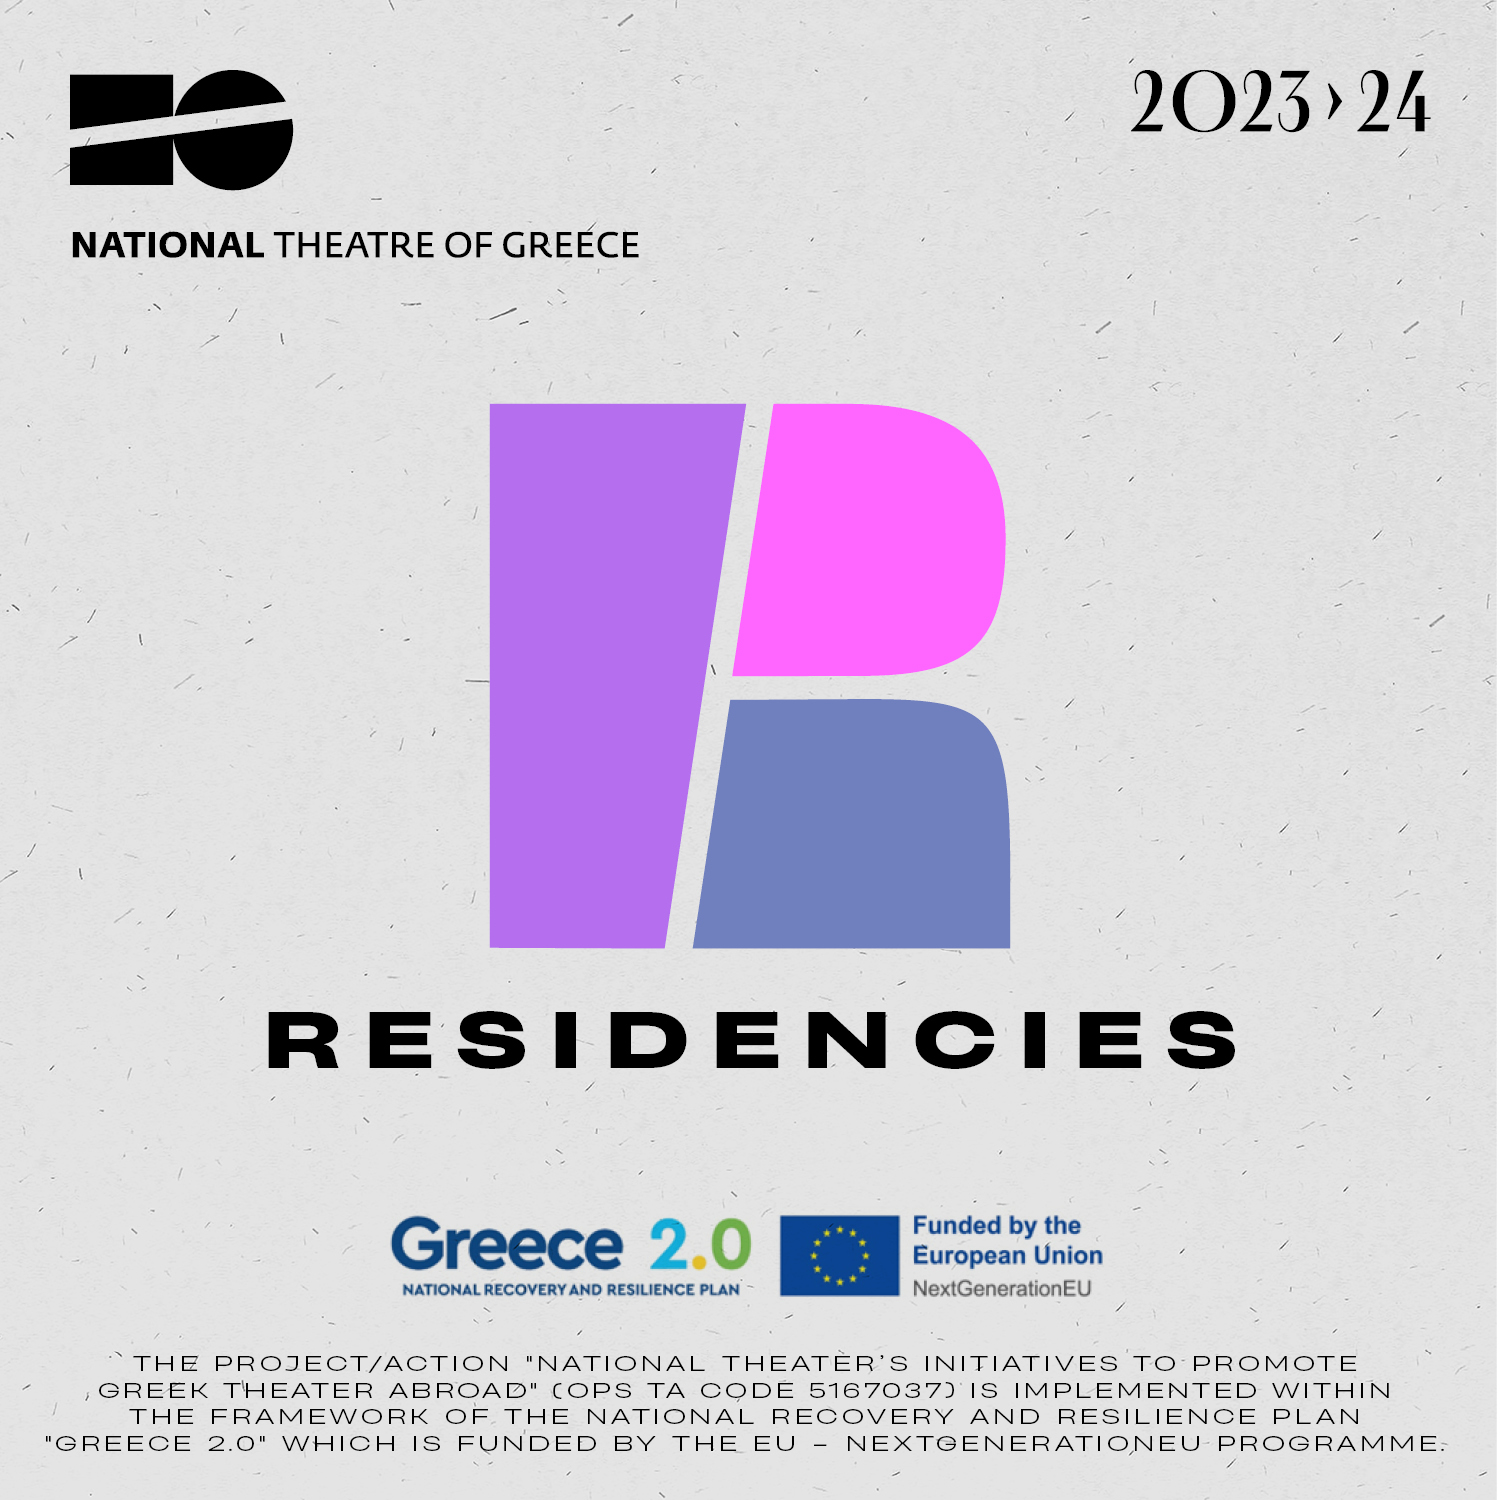 Pildi keskel on paksude joontega ja erinevates lillades toonides R-täht, selle all kirjas "Residencies". Vasakus ülemises nurgas on kirjas "National Theatre of Greece" ning selle kohal teatri logo.